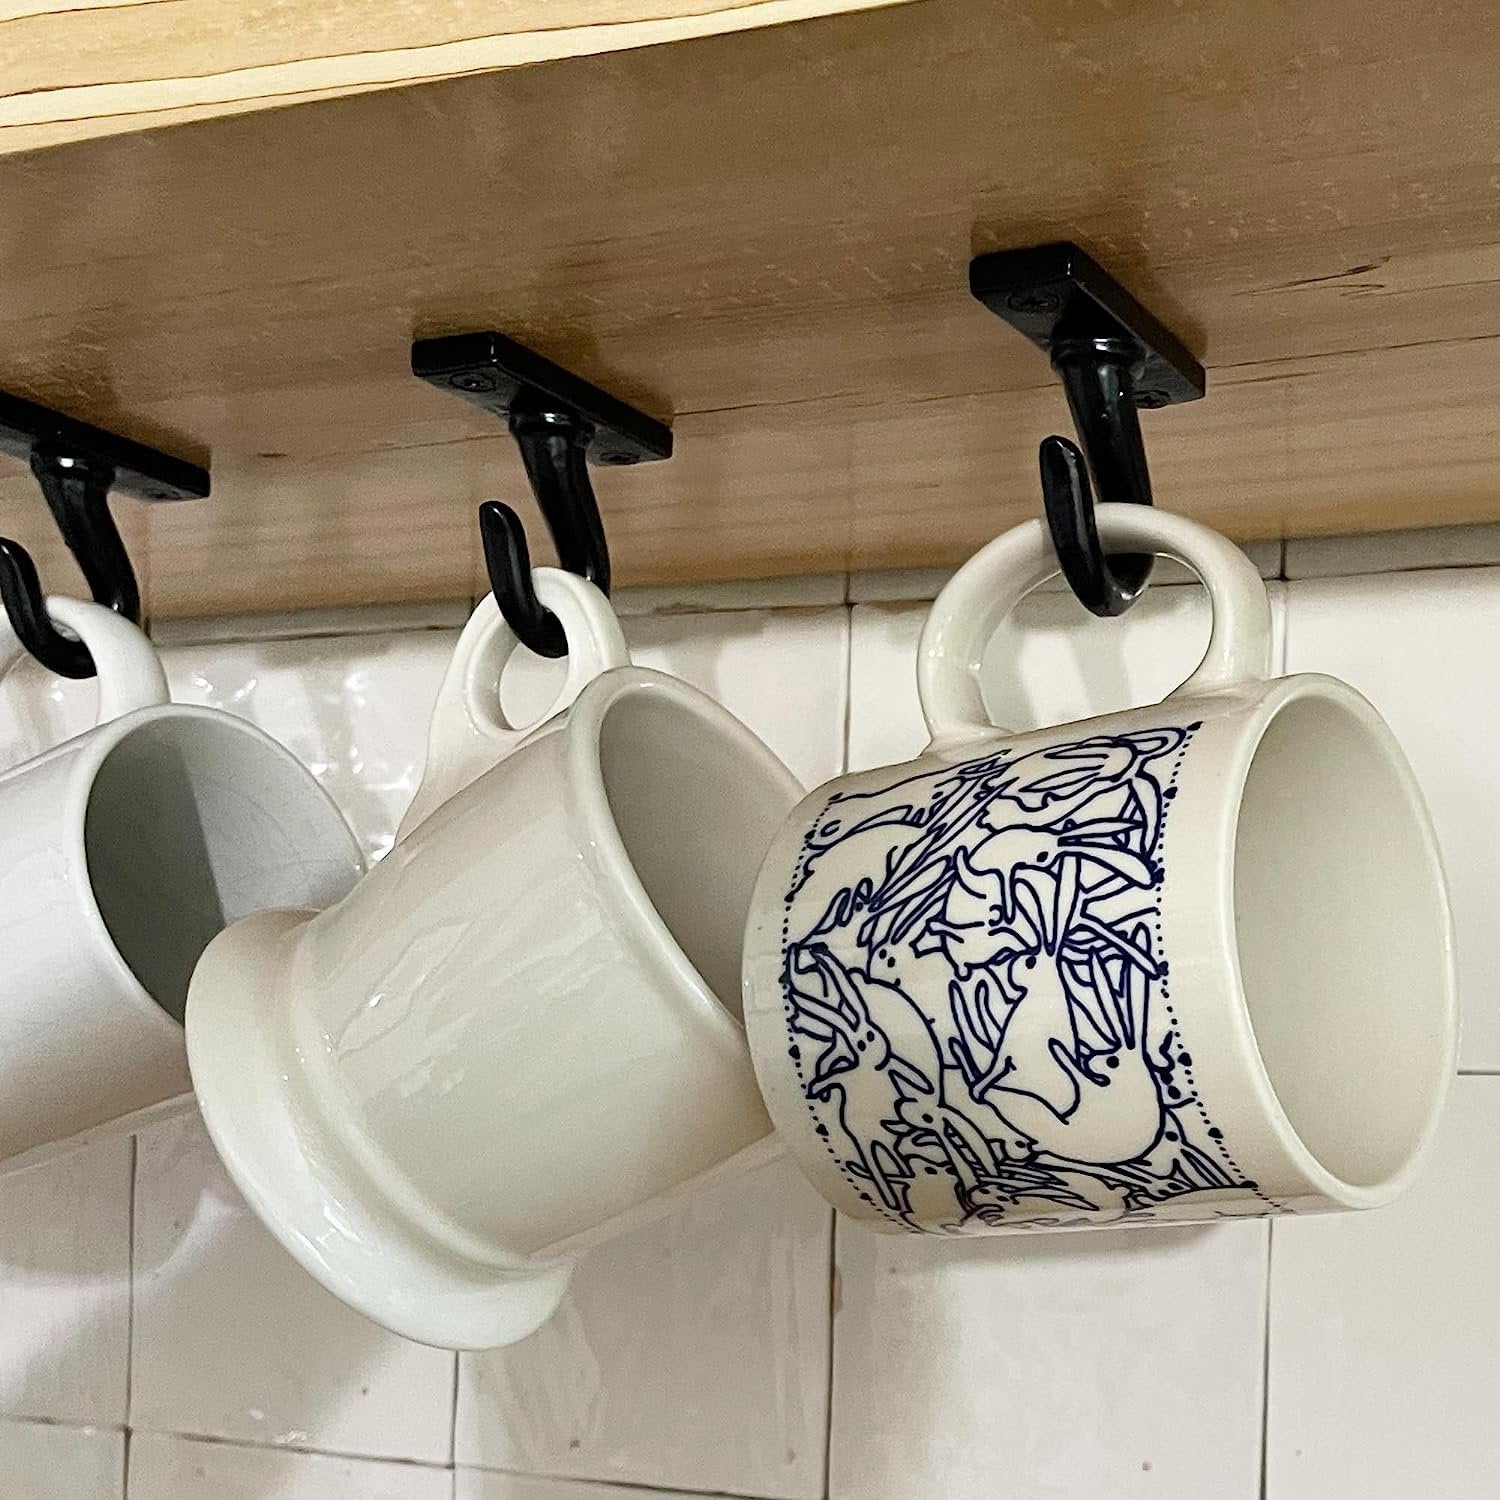 ANTIQUE HARDWARE DEPOT - 2.5”-Under Cabinet or Shelf Coffee Mug